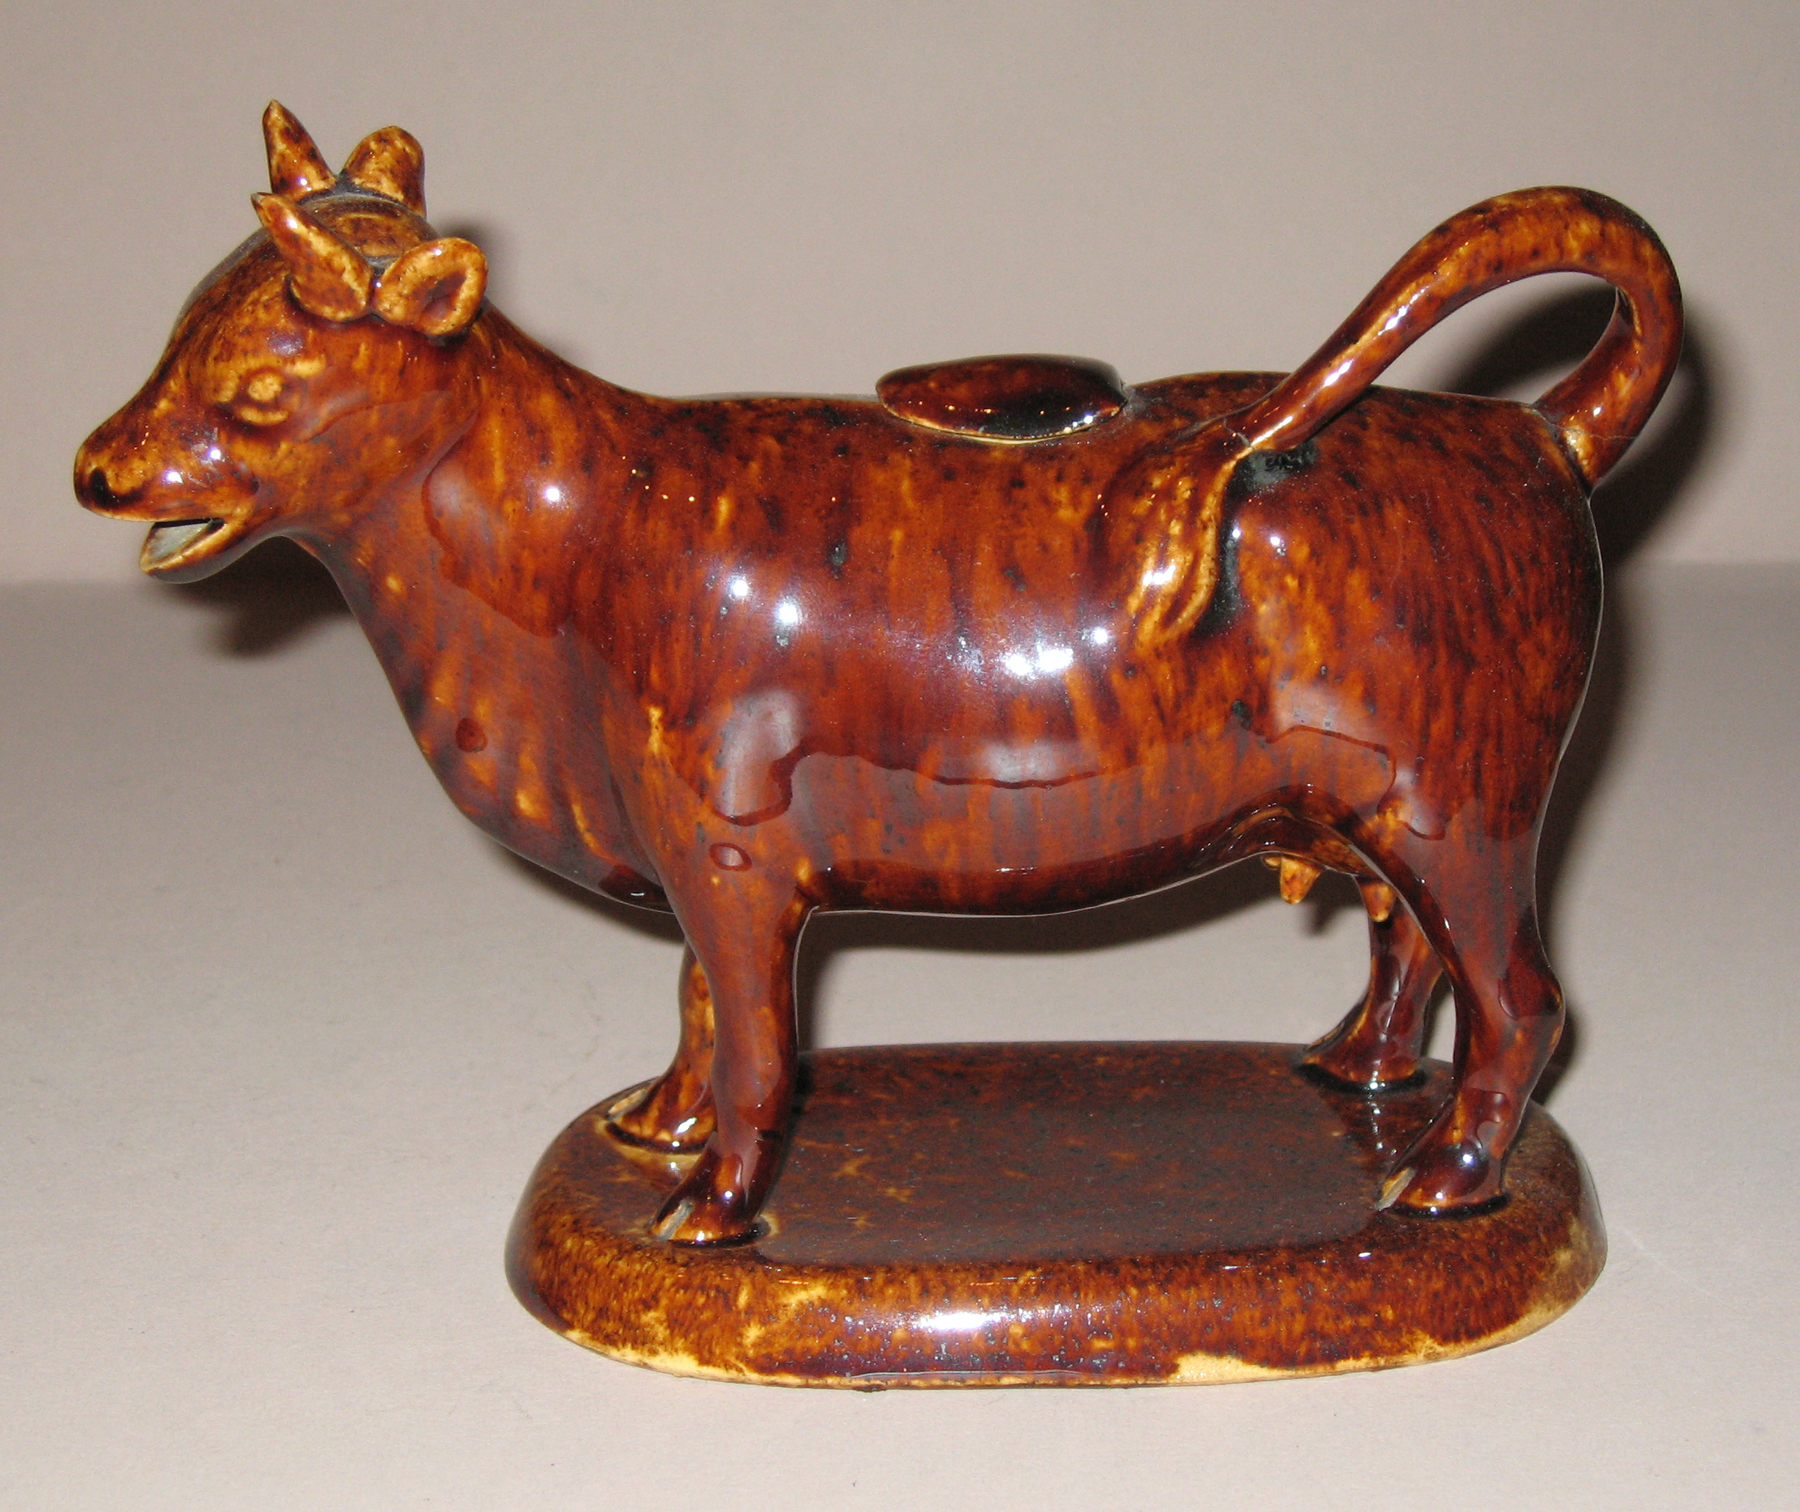 1967.1870 A, B Earthenware cow creamer